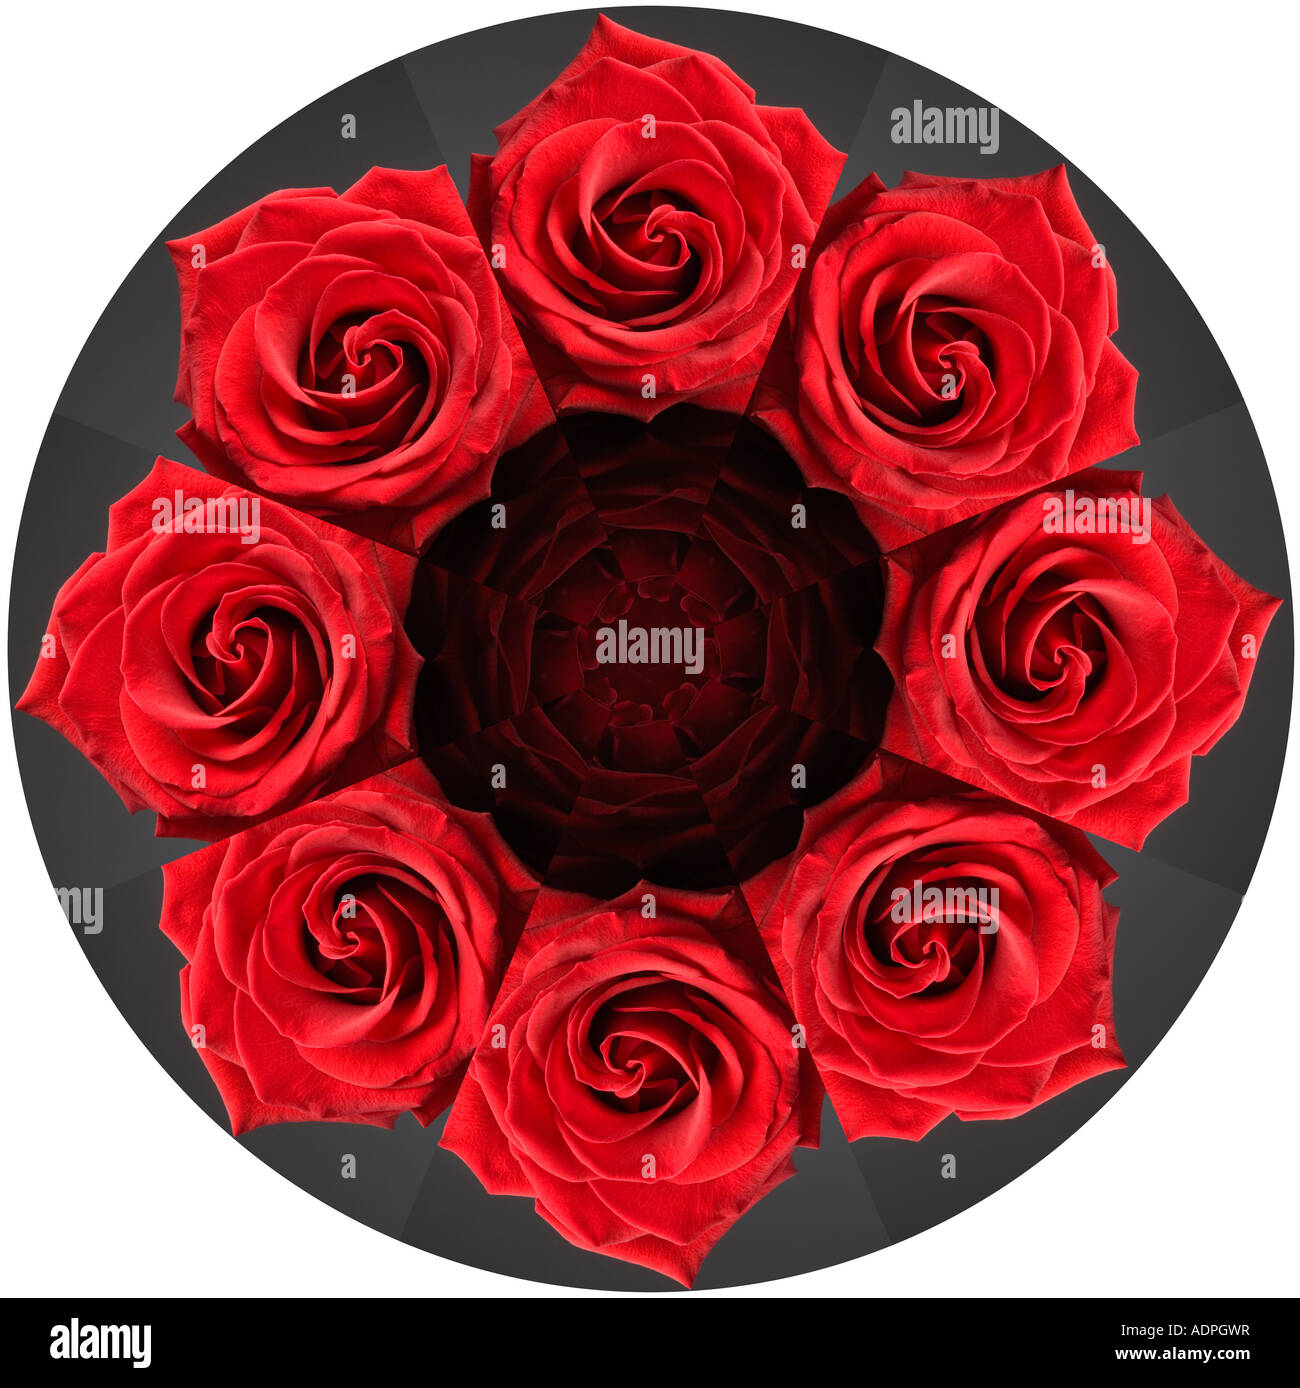 8 Roses rouges dans un cercle Photo Stock - Alamy